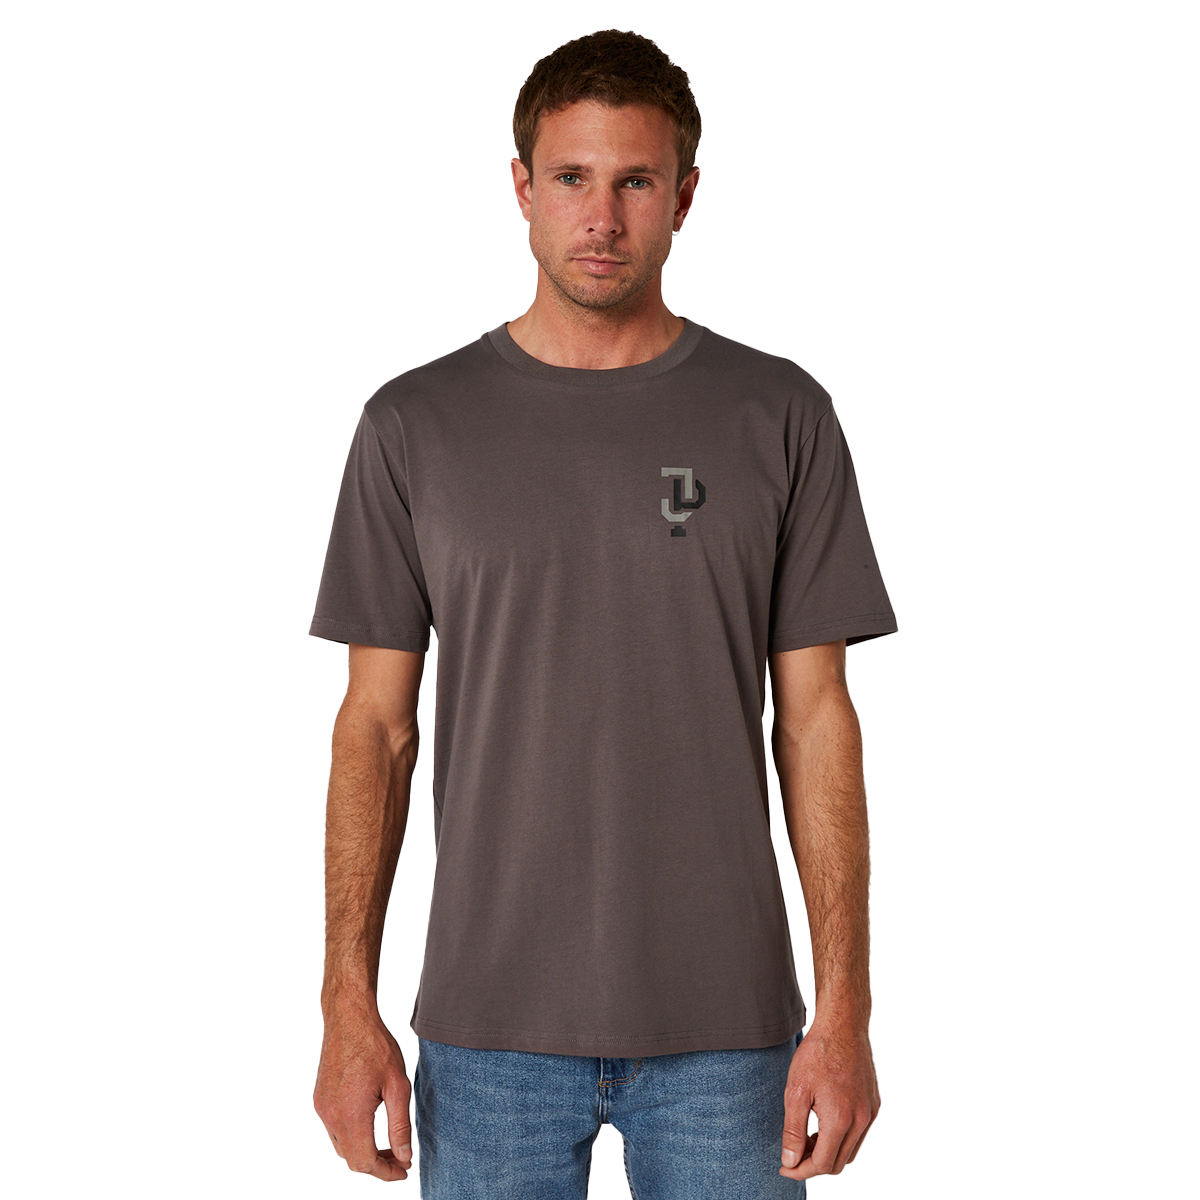 ジェットパイロット JETPILOT 2022 Tシャツ メンズ マリン 送料無料 リンクド SS Tシャツ LINKED SS TEE コール M W22604